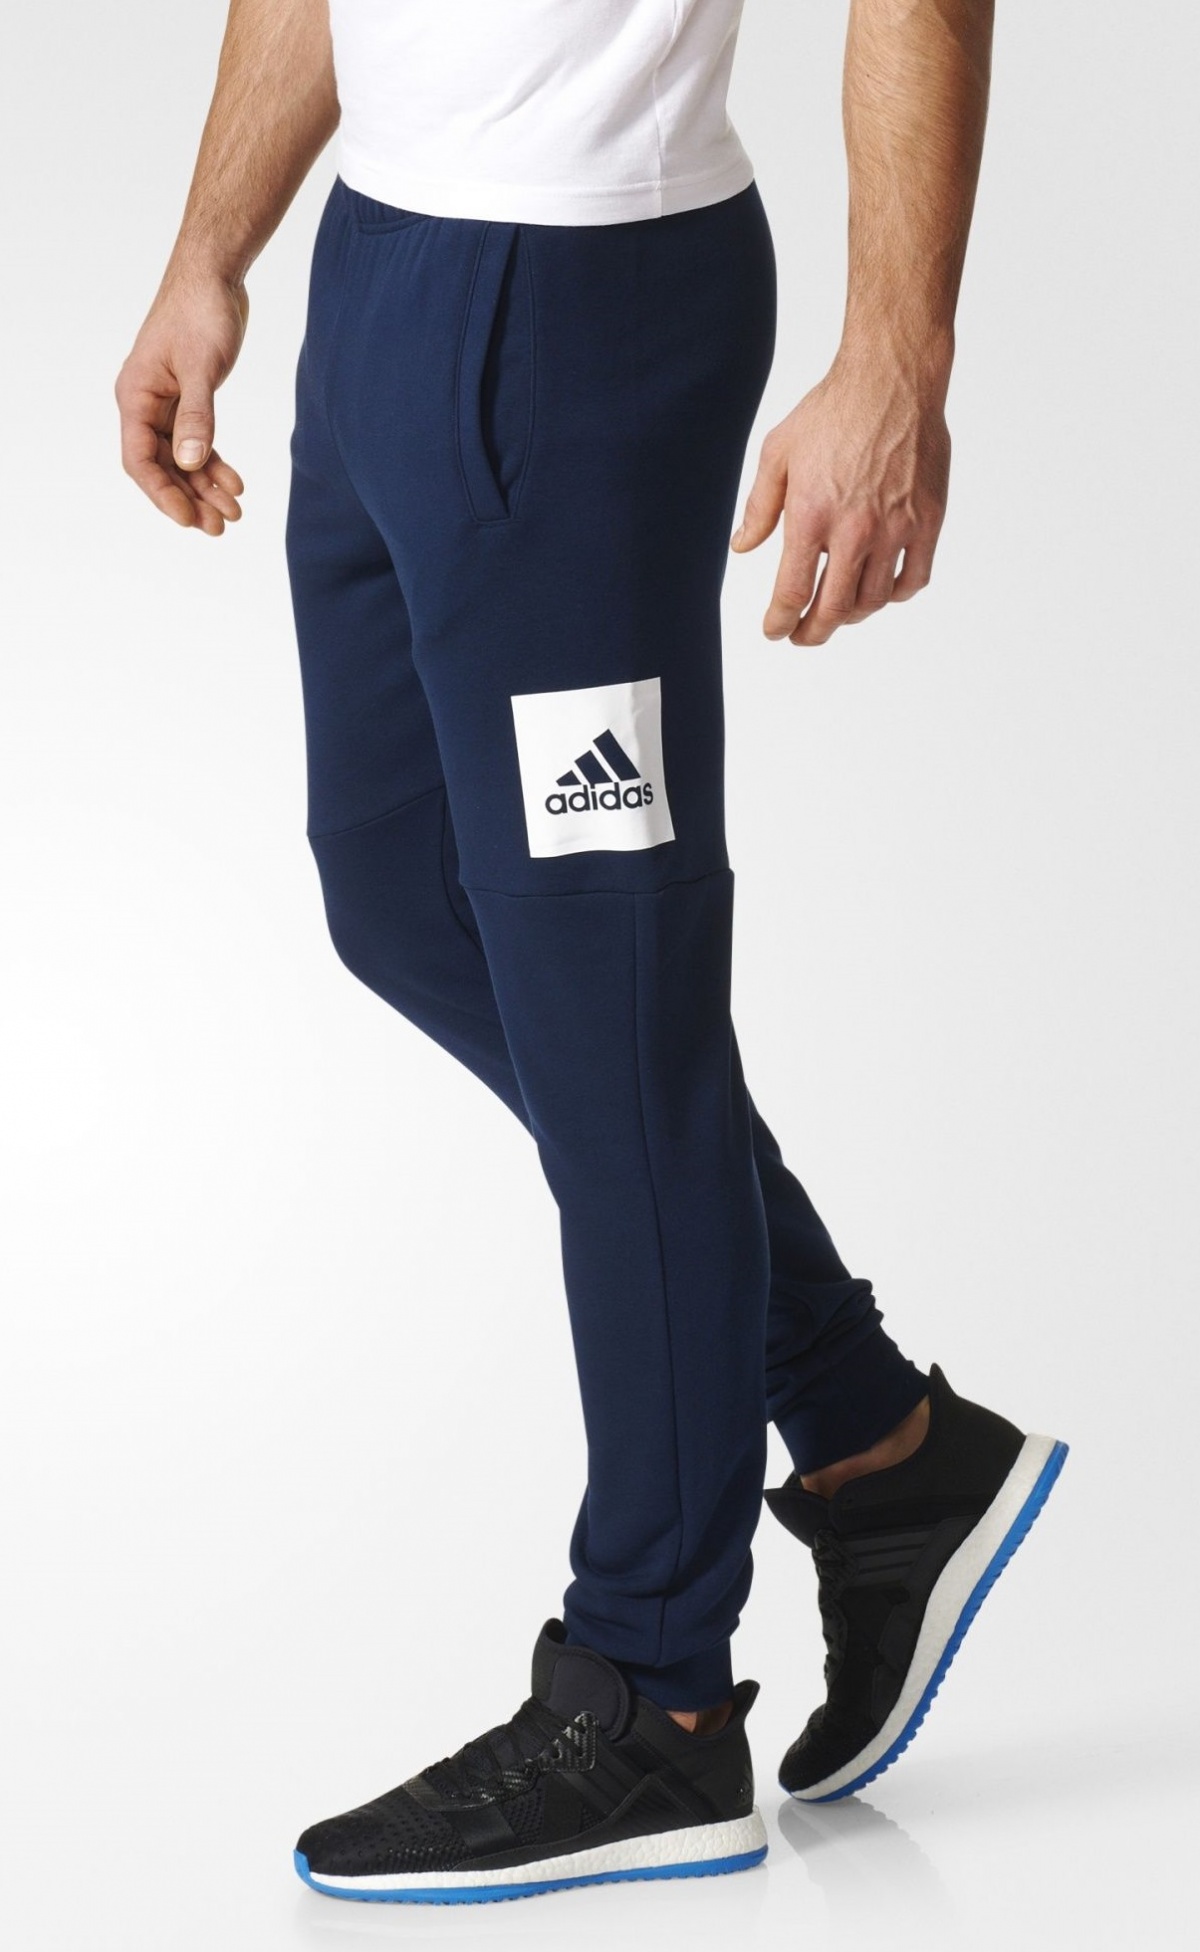 ESS S PNT FT Adidas — купить доставкой в Киев и по Украине